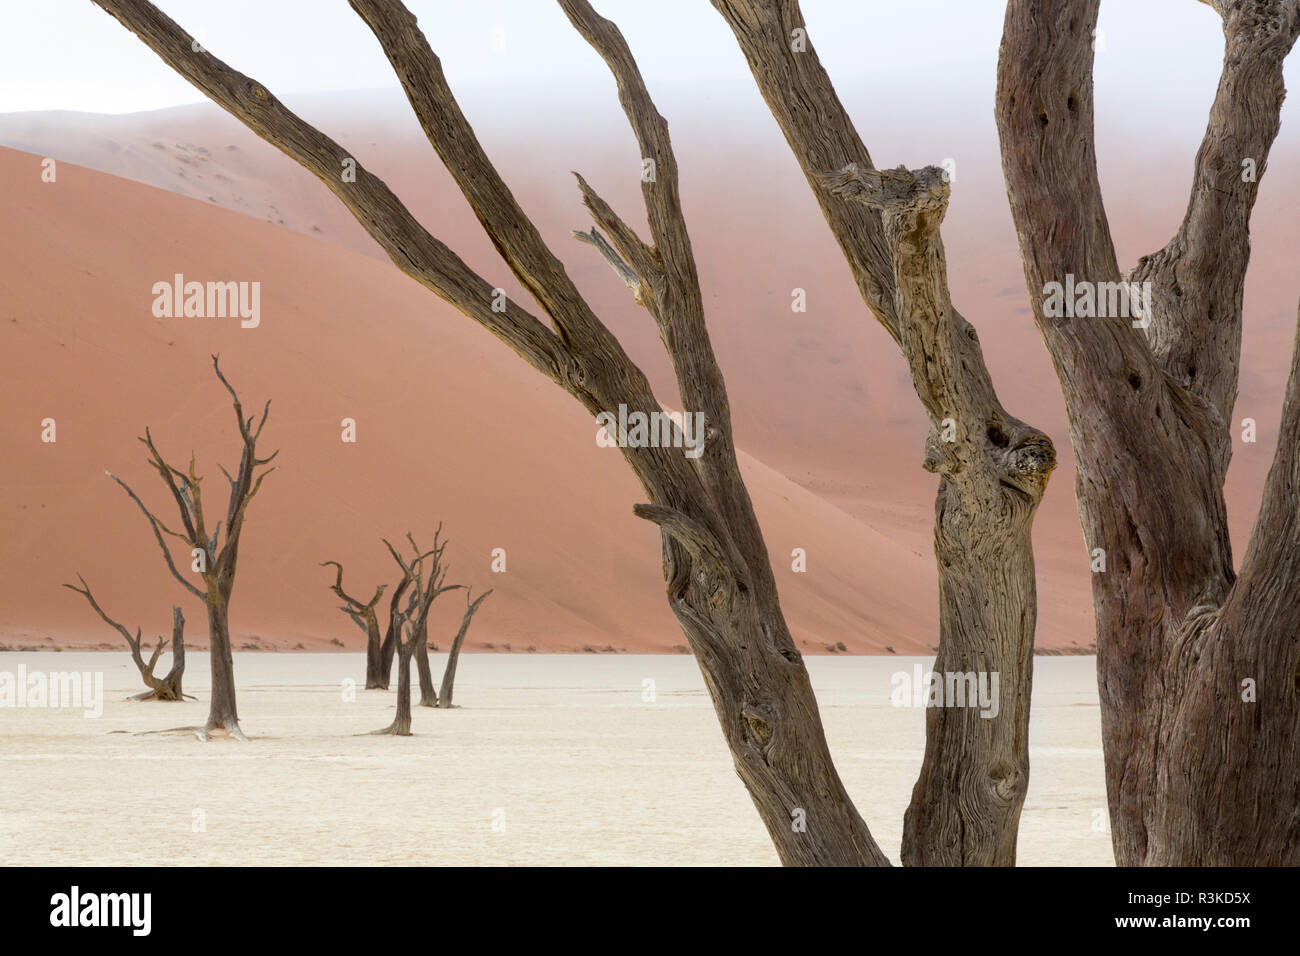 L'Afrique, la Namibie, le parc de Namib Naukluft, Deadvlei. Camelthorn arbres morts et des dunes. En tant que crédit : Wendy Kaveney Jaynes / Galerie / DanitaDelimont.com Banque D'Images